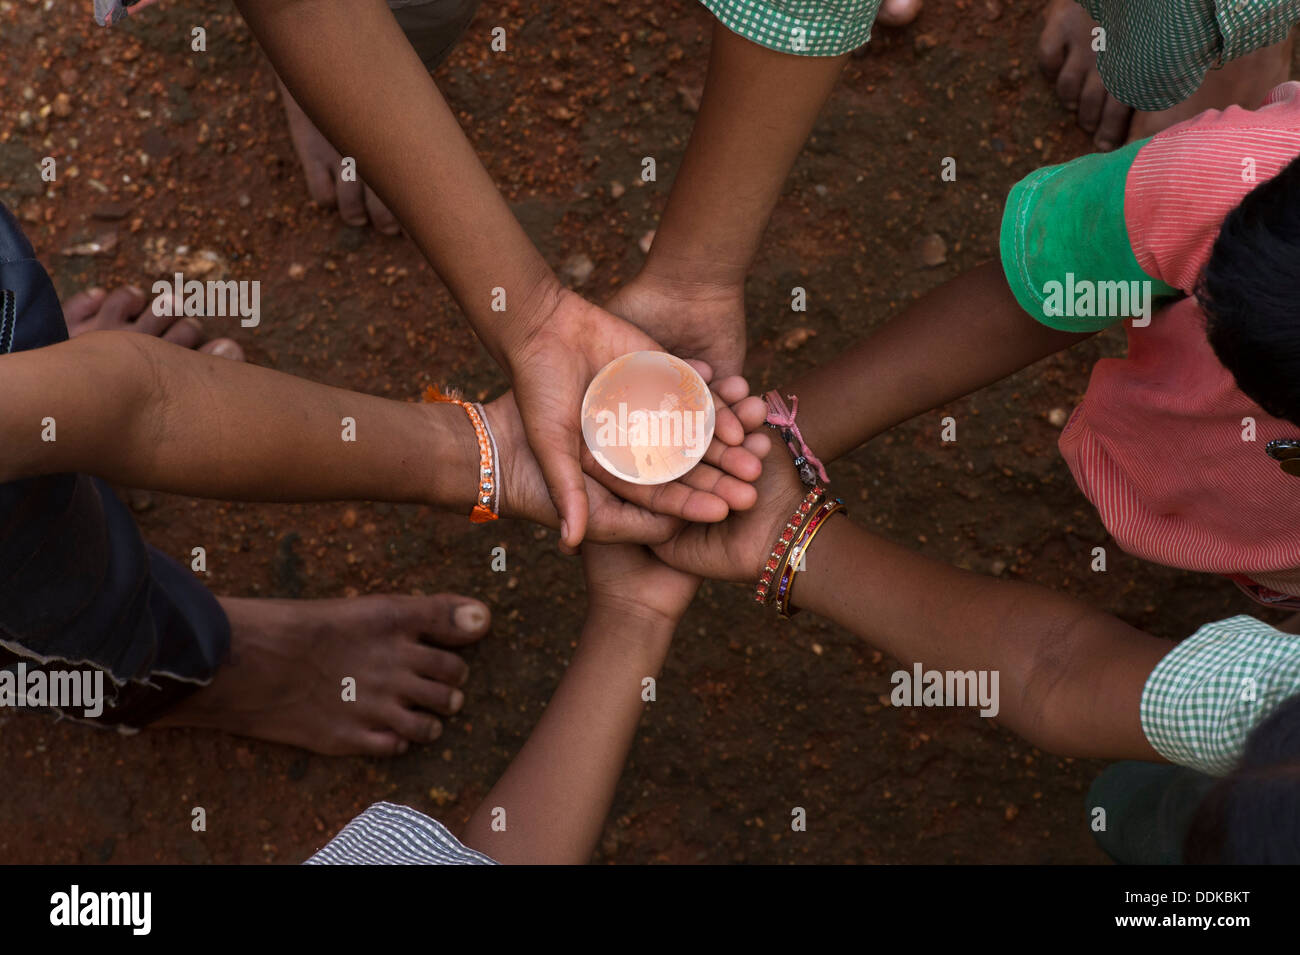 Les mains de childrens village situé dans un cercle tenant un globe en verre cristal / masse / monde. L'Andhra Pradesh, Inde Banque D'Images